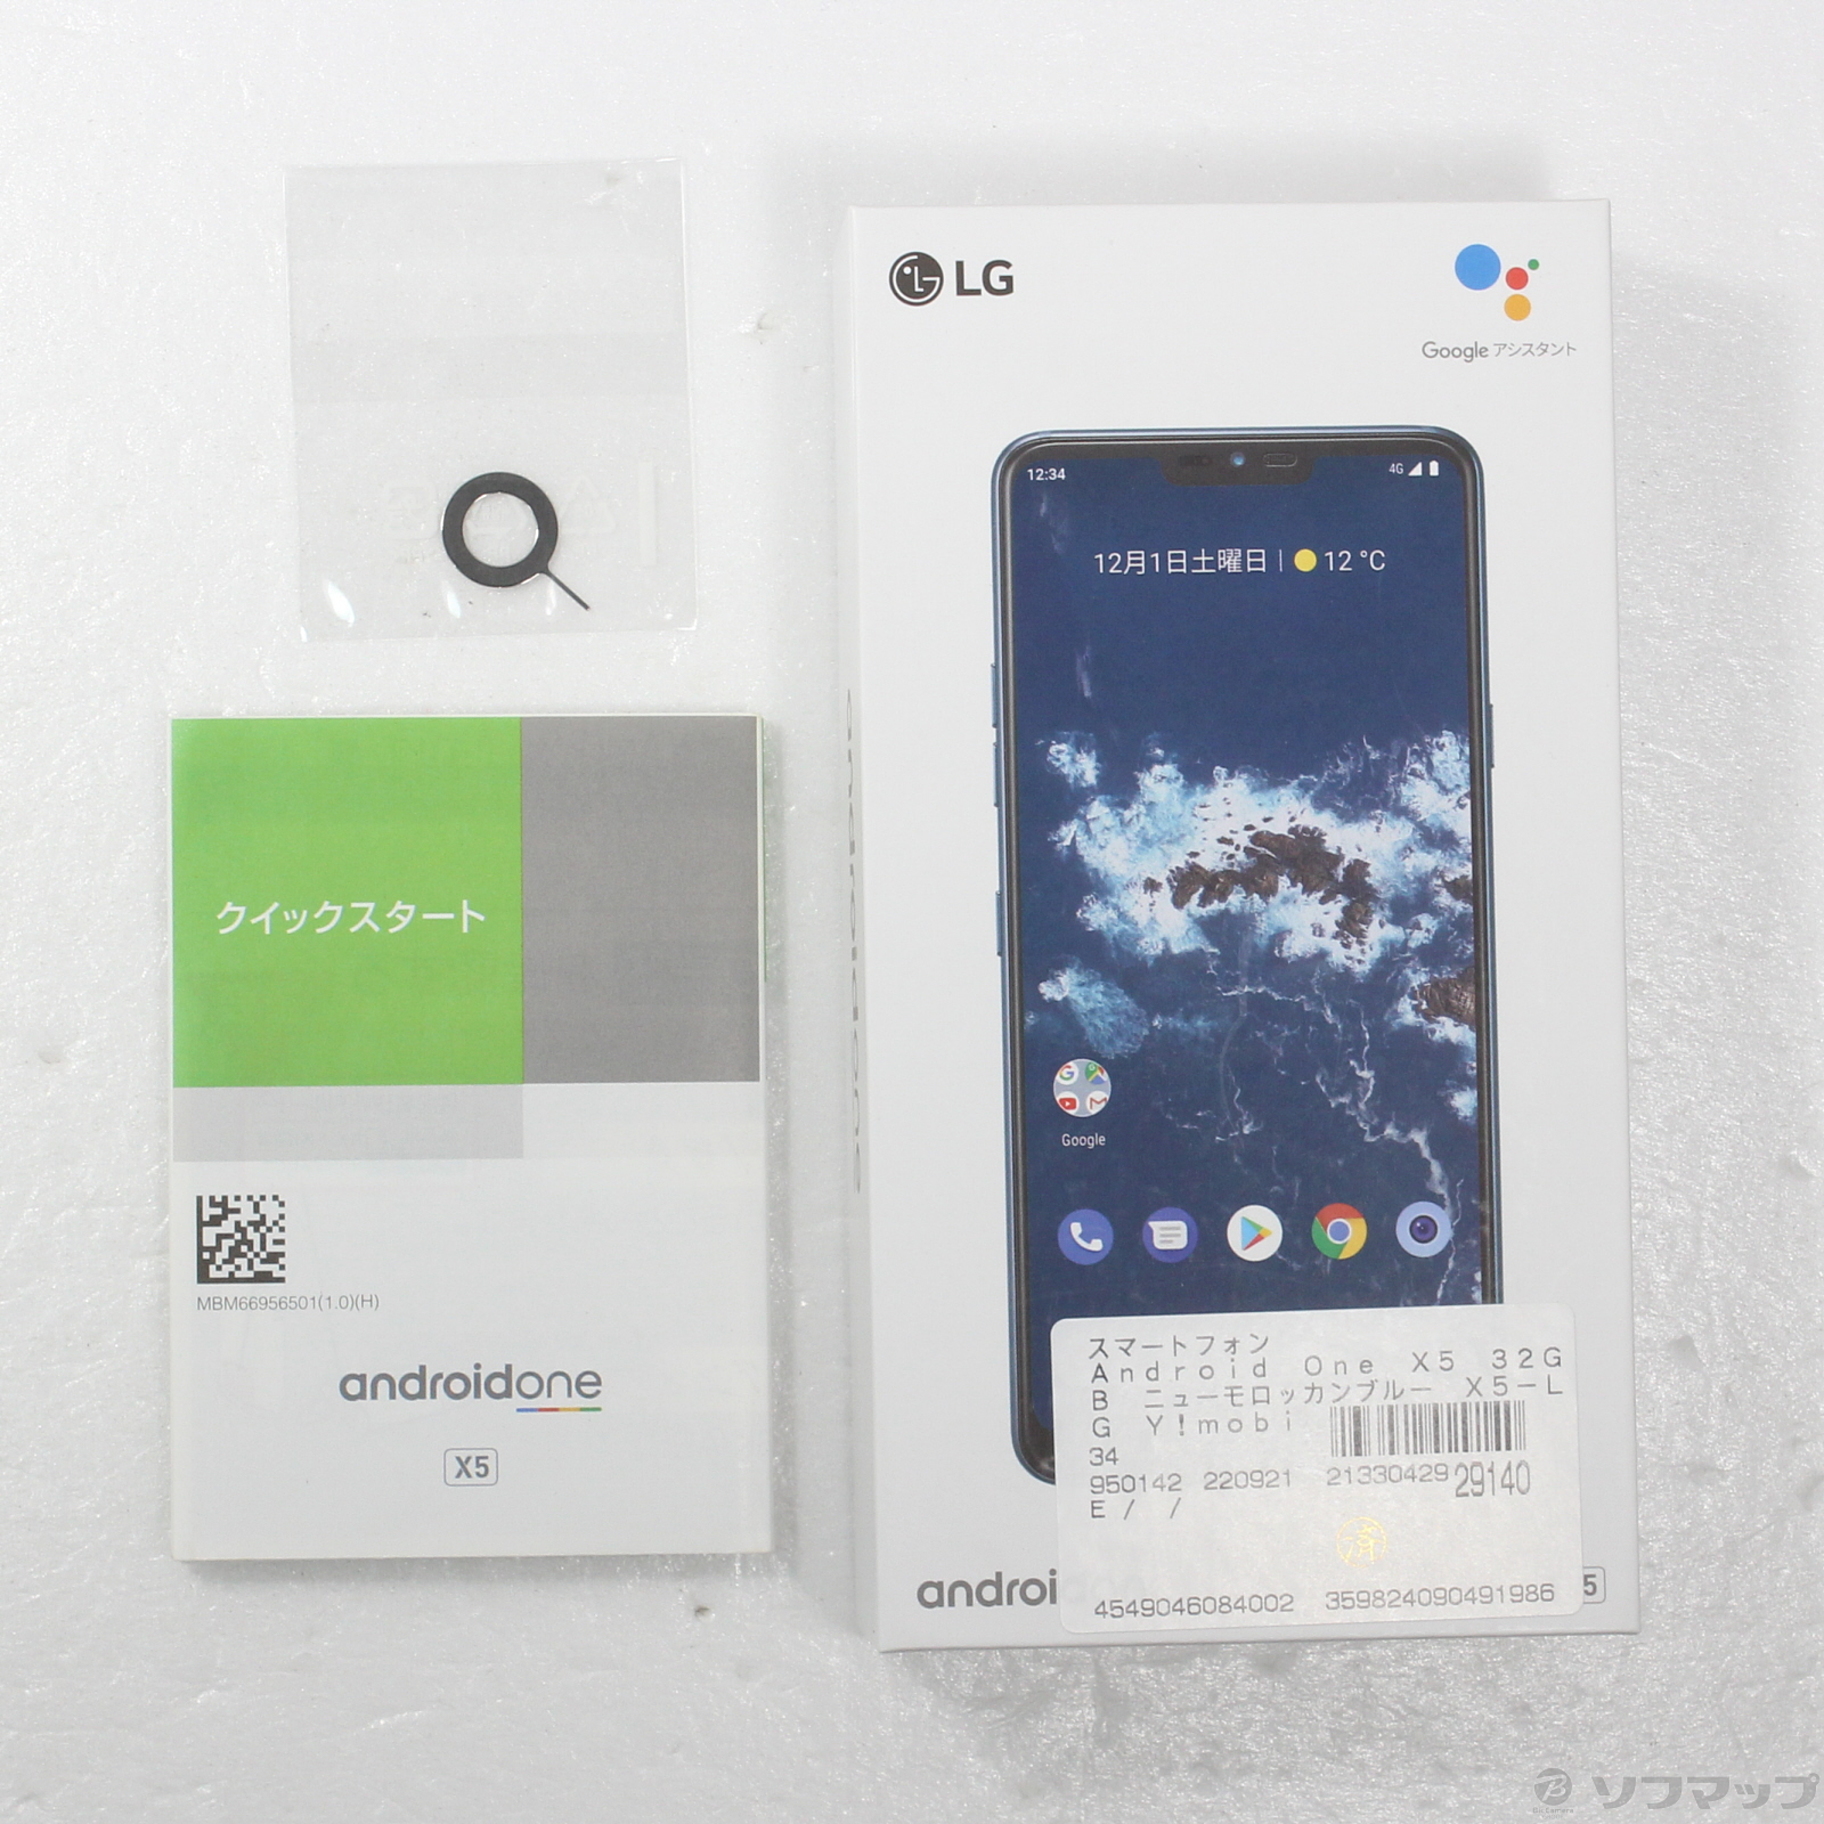 Android one X5  ﾆｭｰﾓﾛｯｶﾝﾌﾞﾙｰ